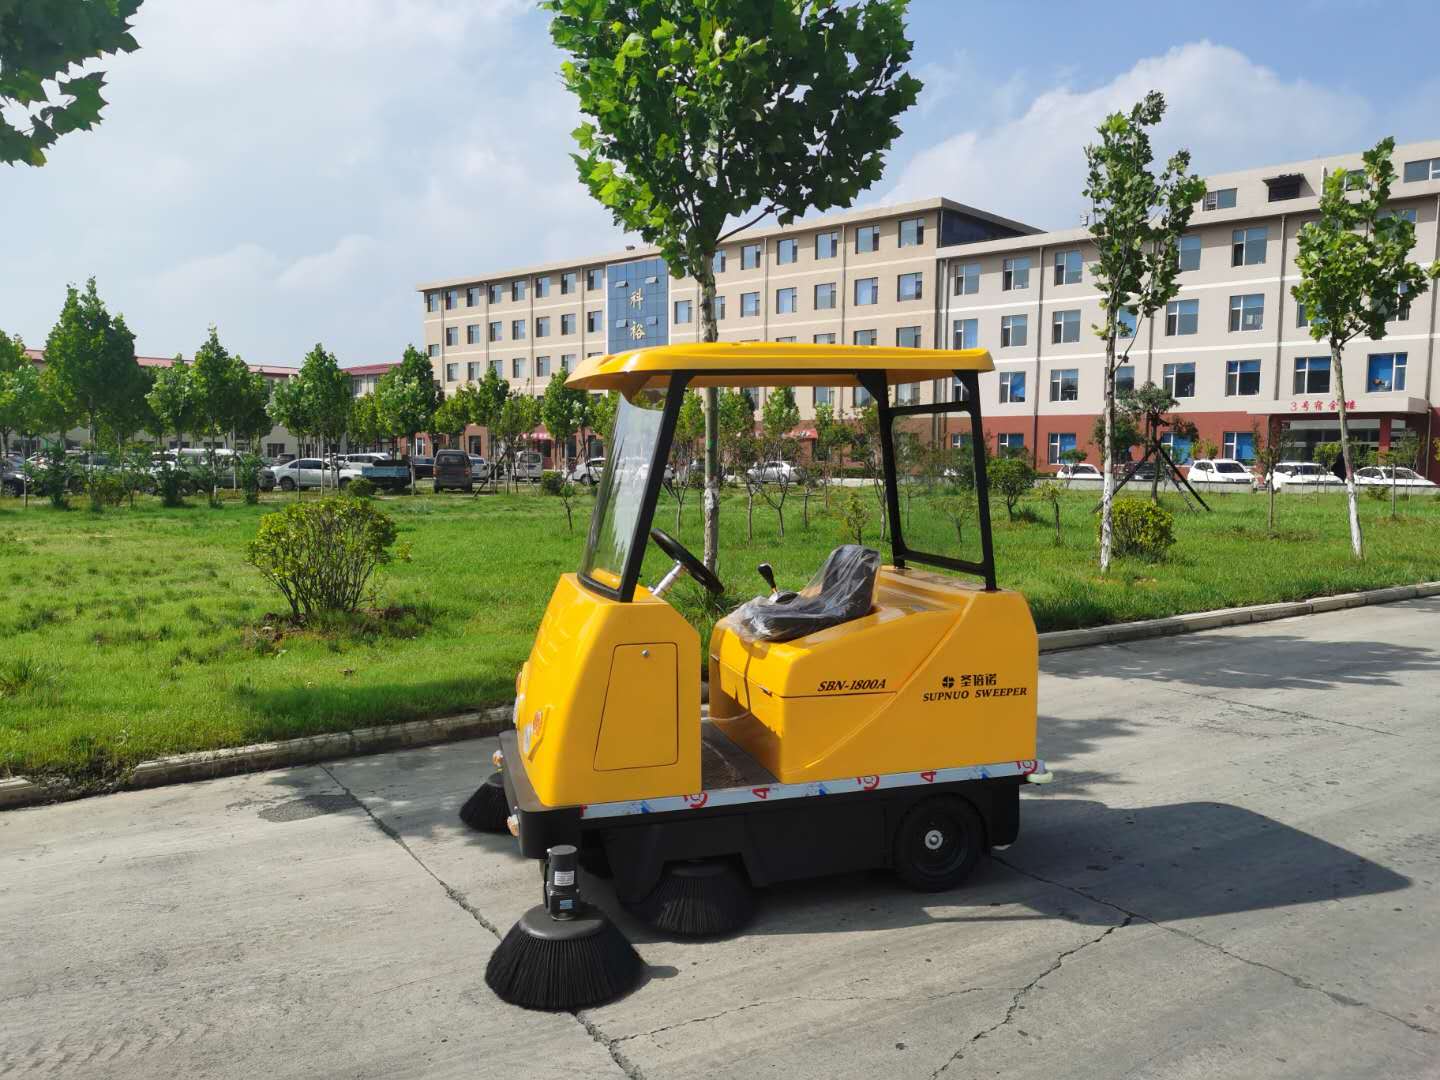 1800扫地车进驻山西晋城某化工企业